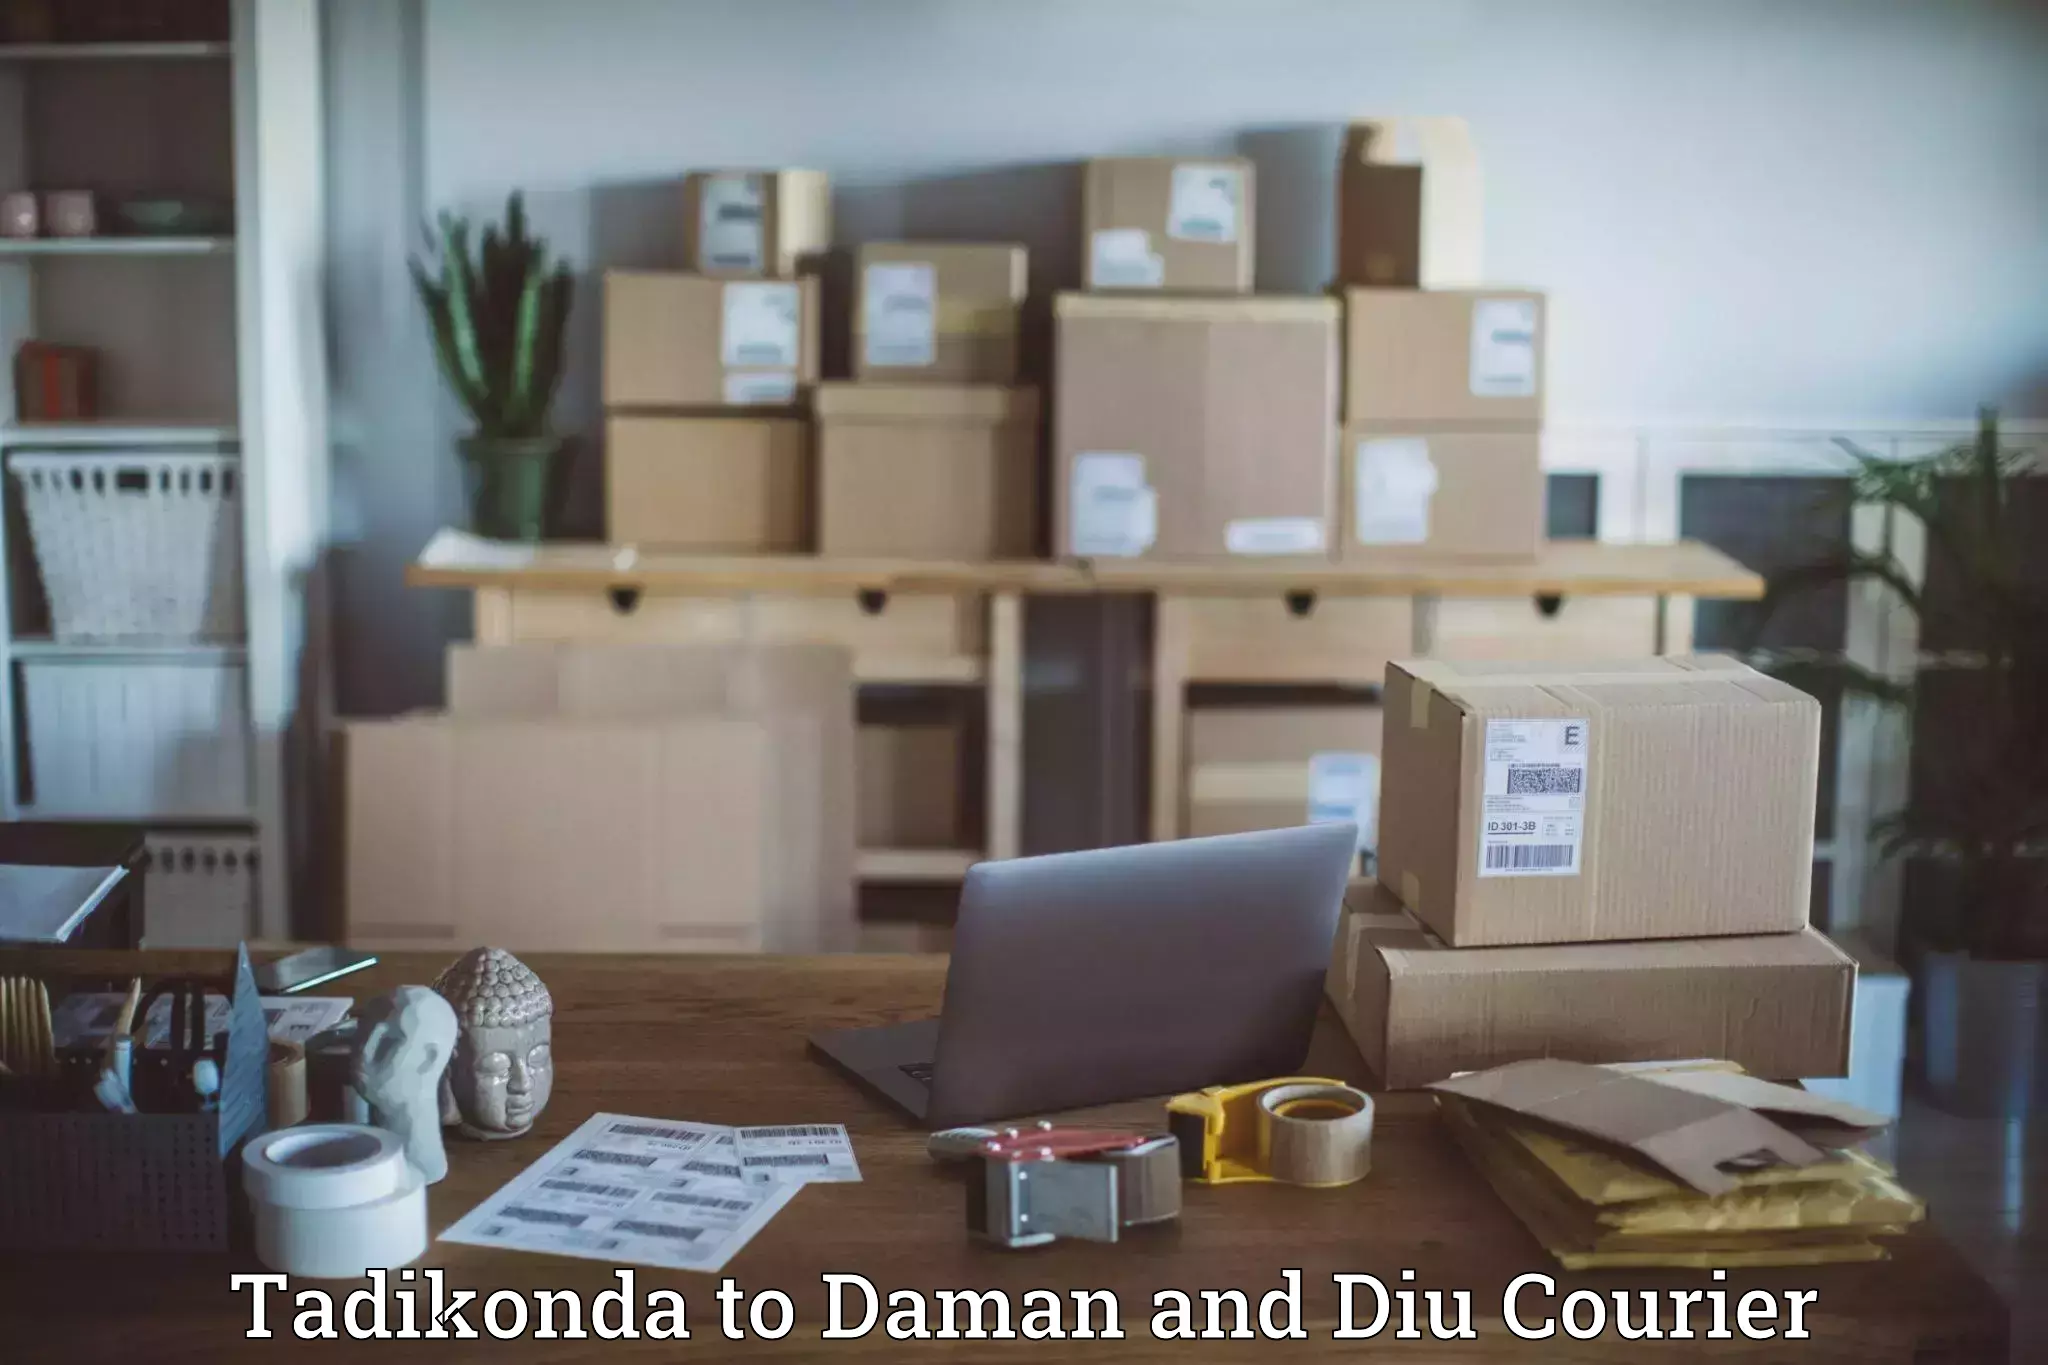 Efficient freight service Tadikonda to Daman and Diu